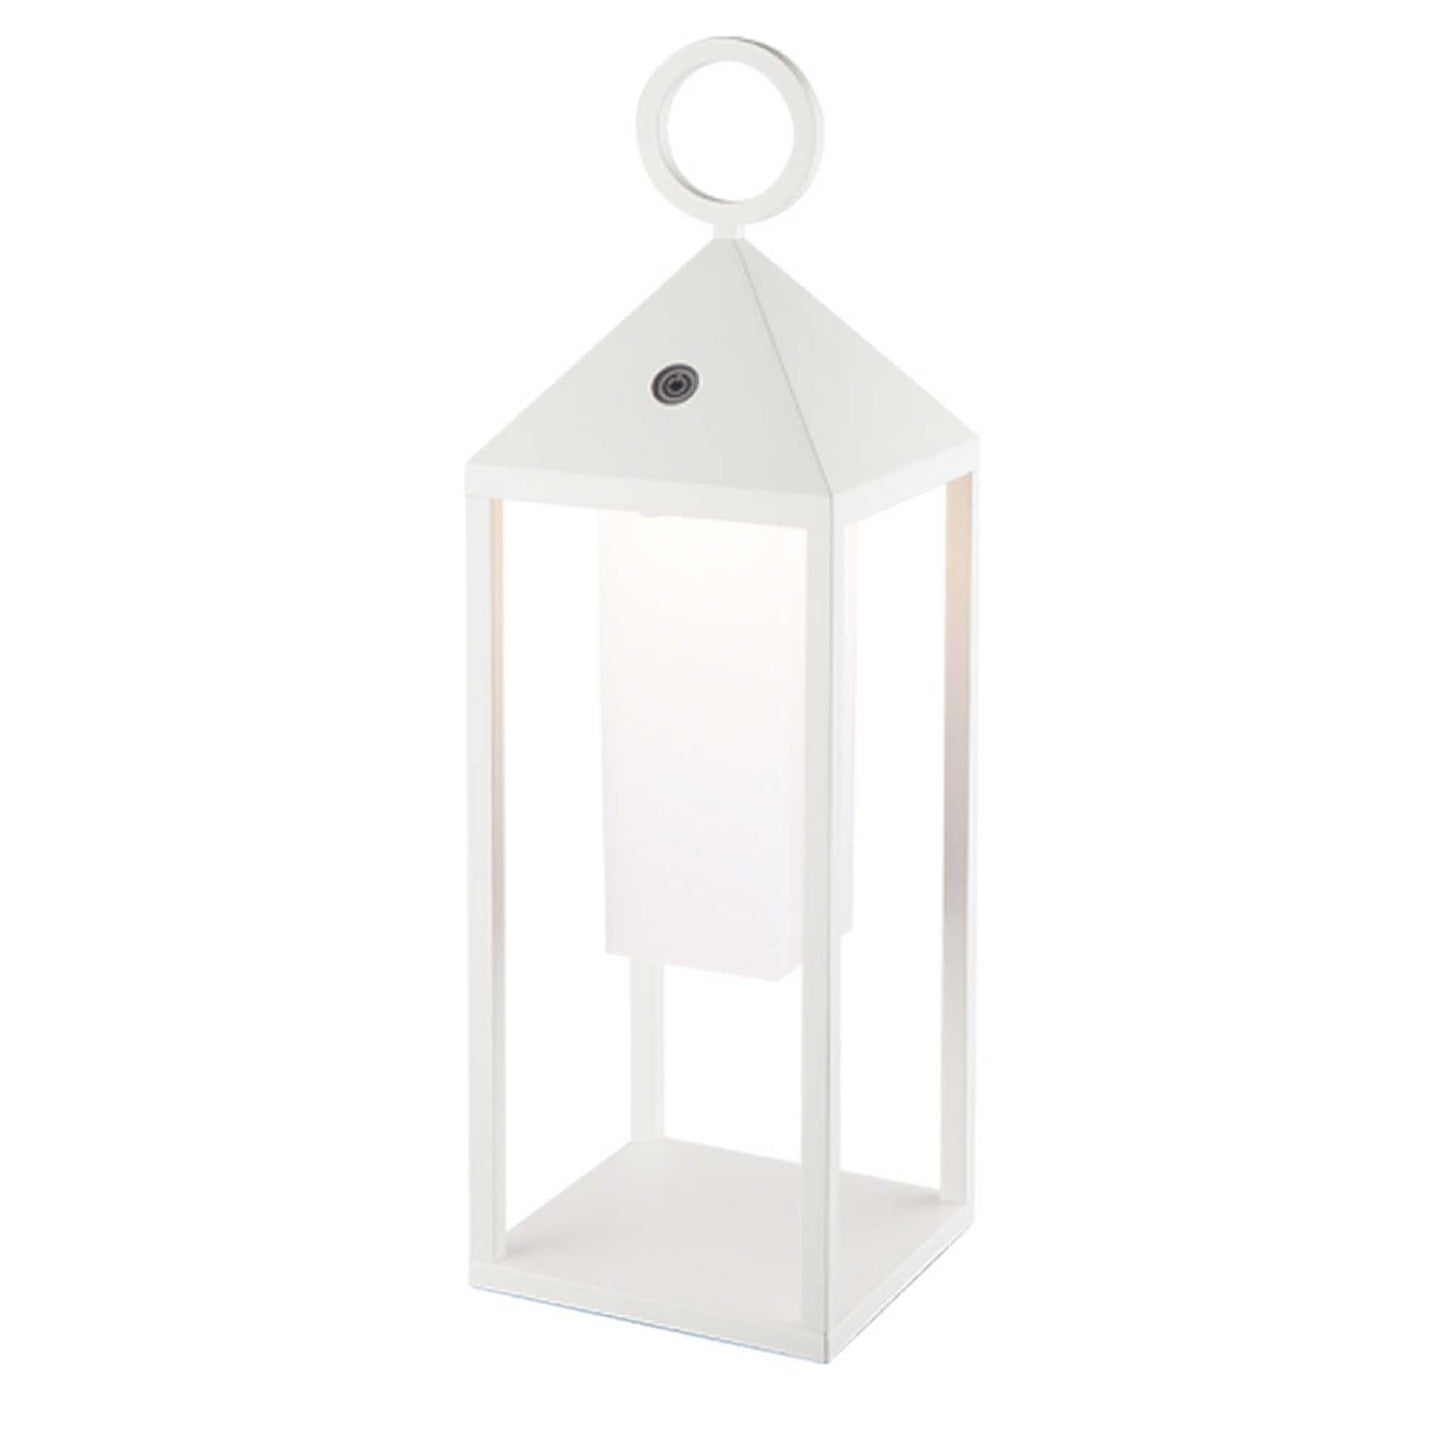 Lanterne design en aluminium sans fil poignée métal LED blanc chaud SANTORIN WHITE H47cm